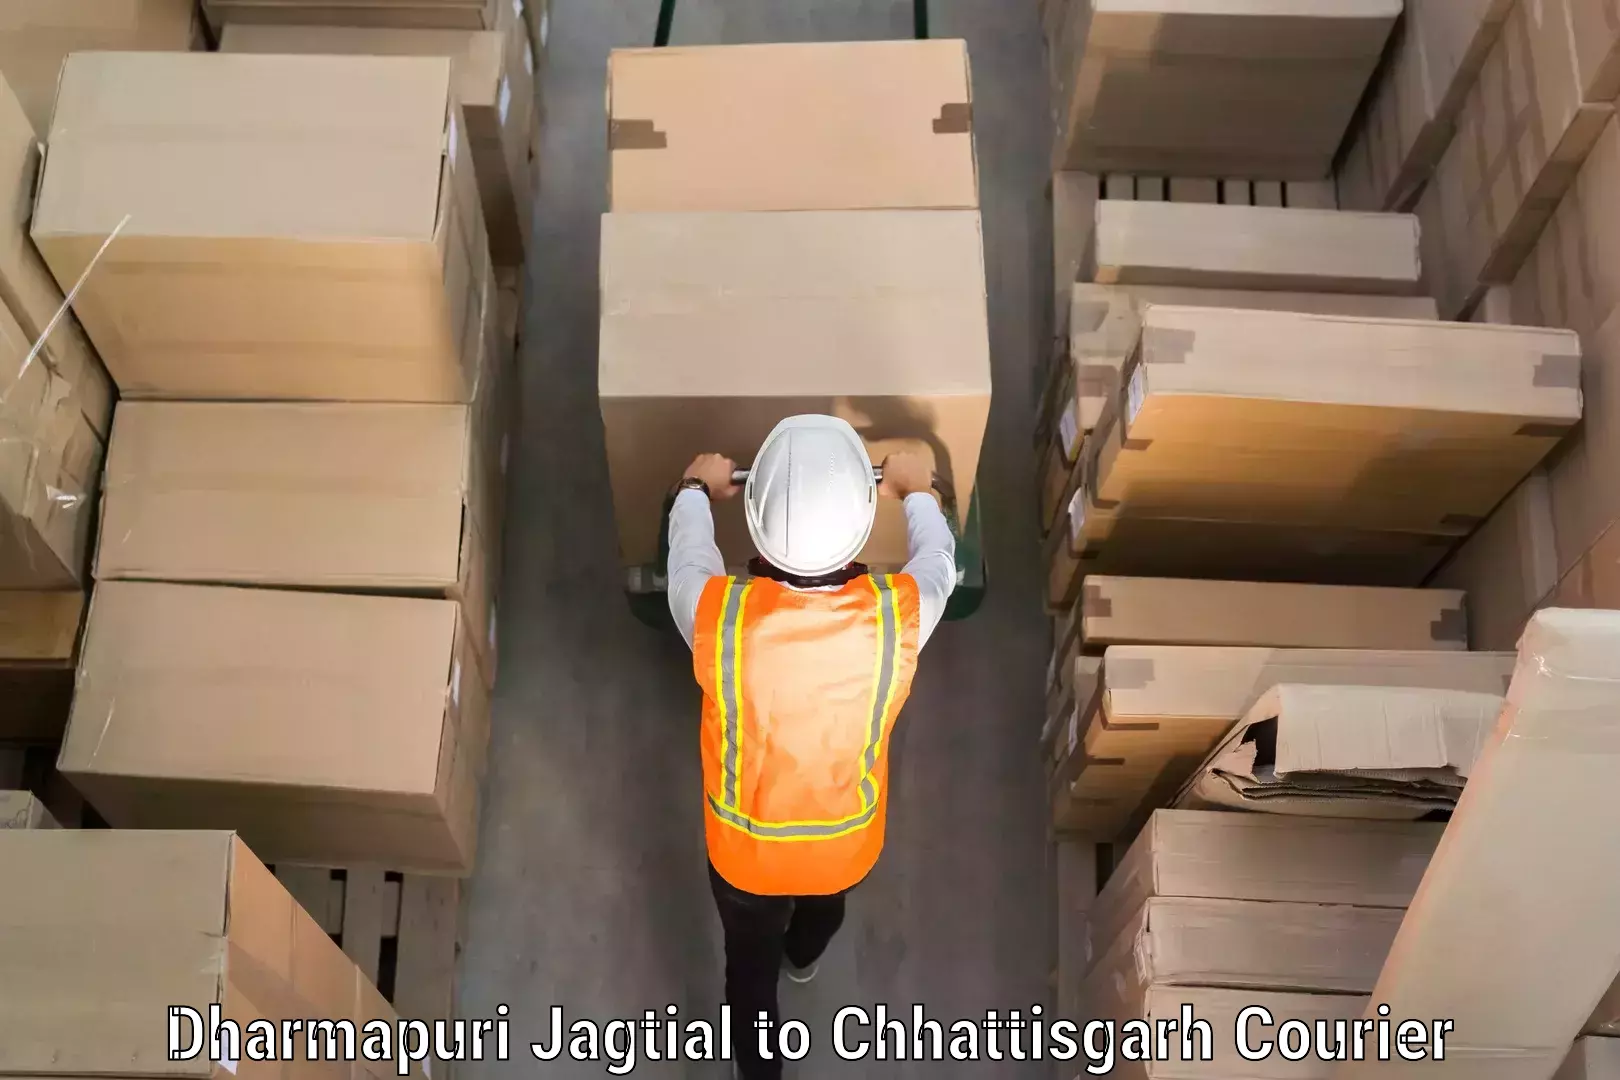 Baggage delivery technology Dharmapuri Jagtial to Akaltara